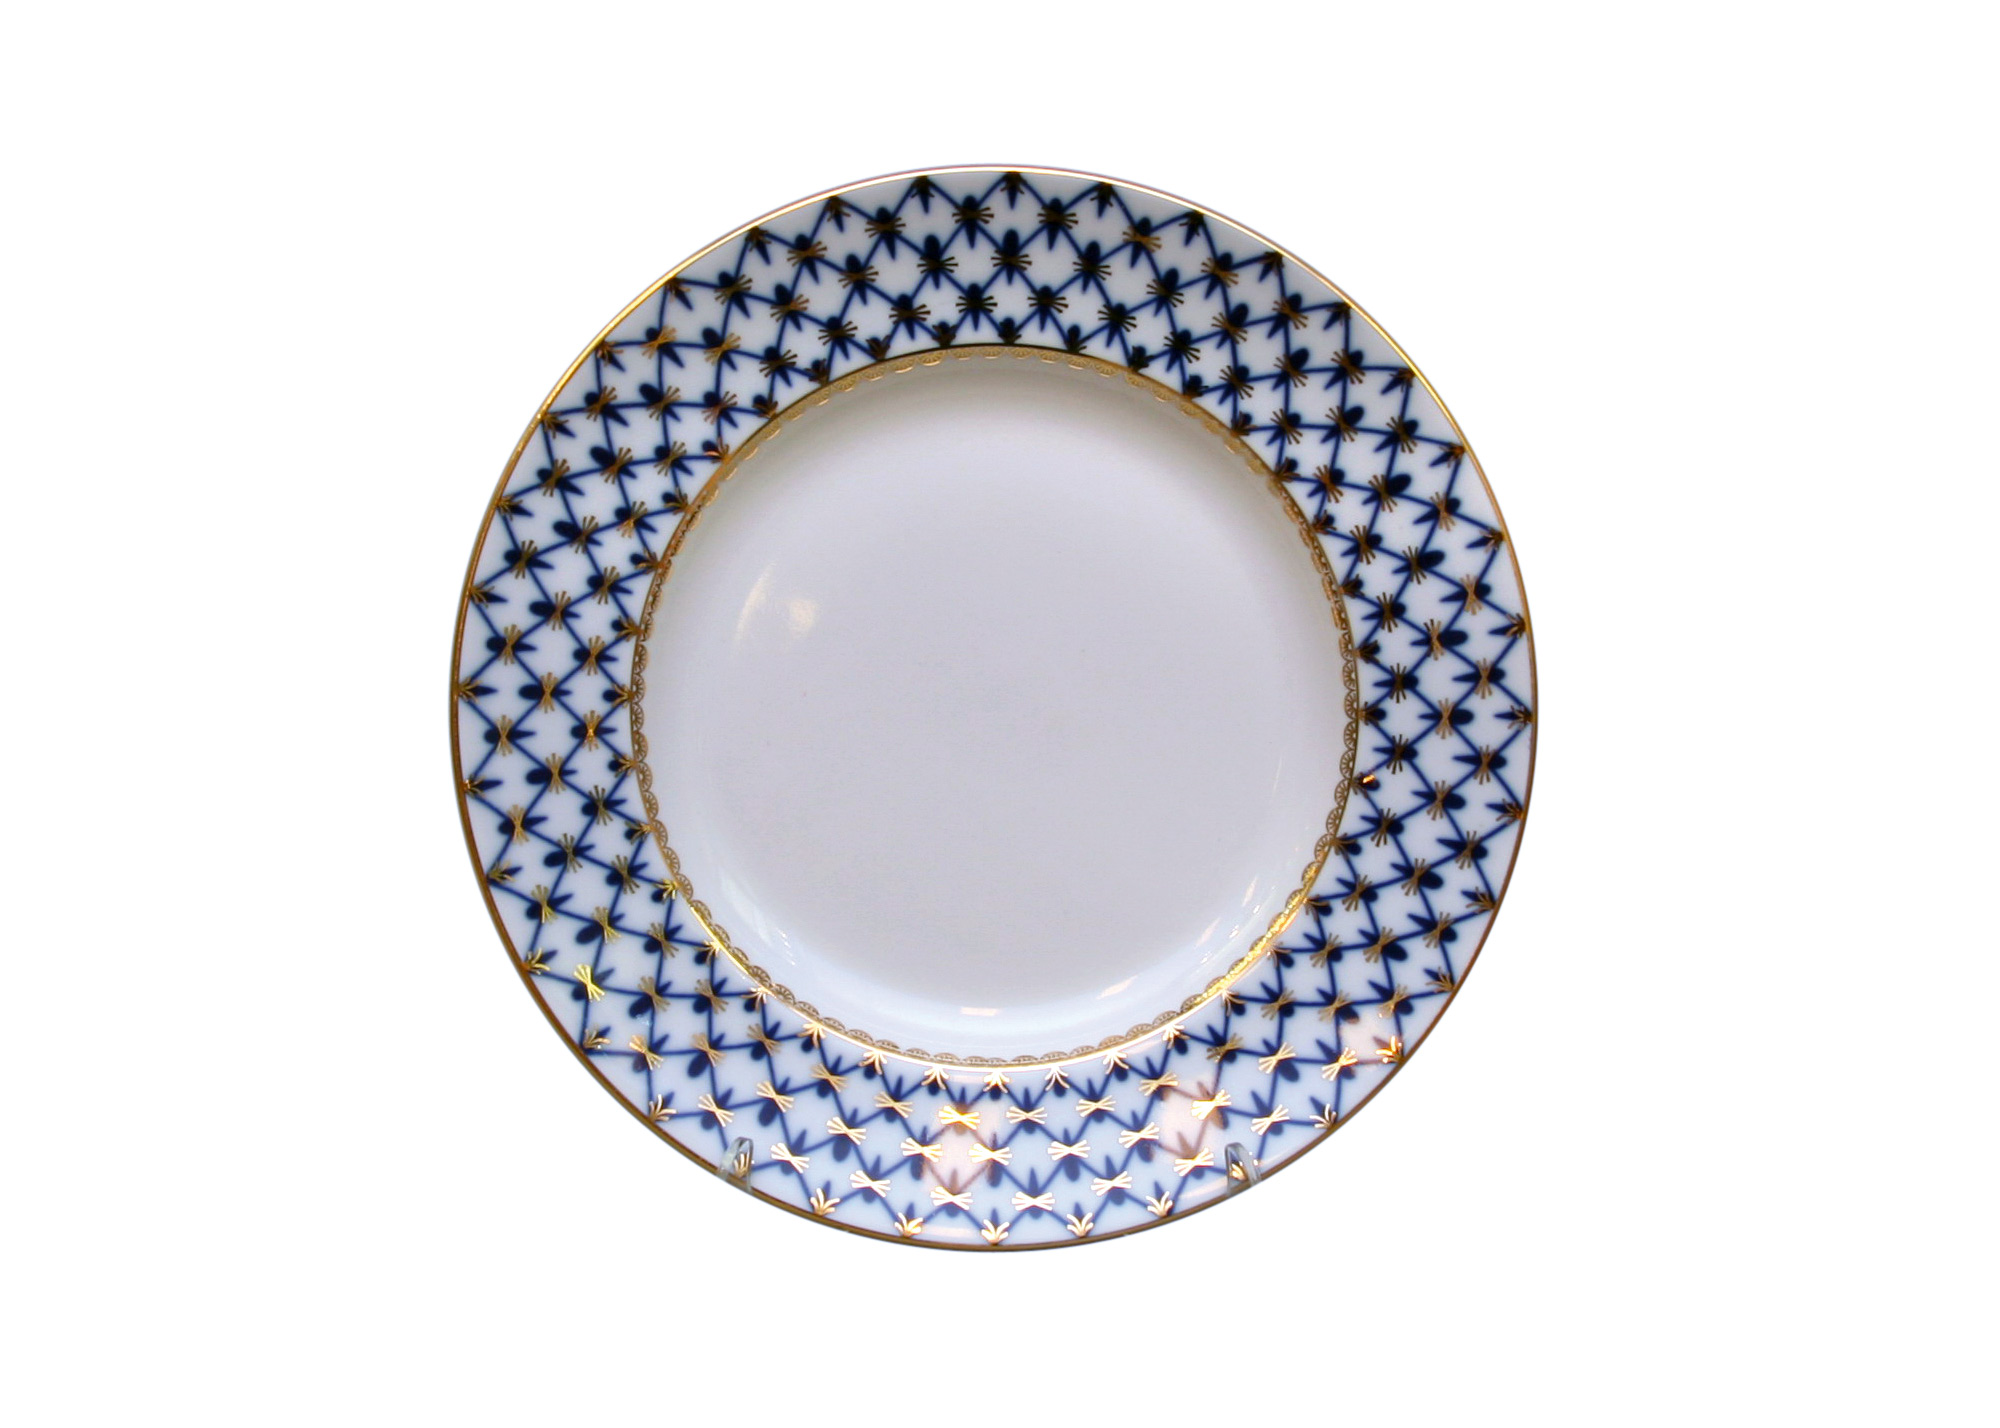 Buy Cobalt Net Porcelain Dinner Plate 11" at GoldenCockerel.com